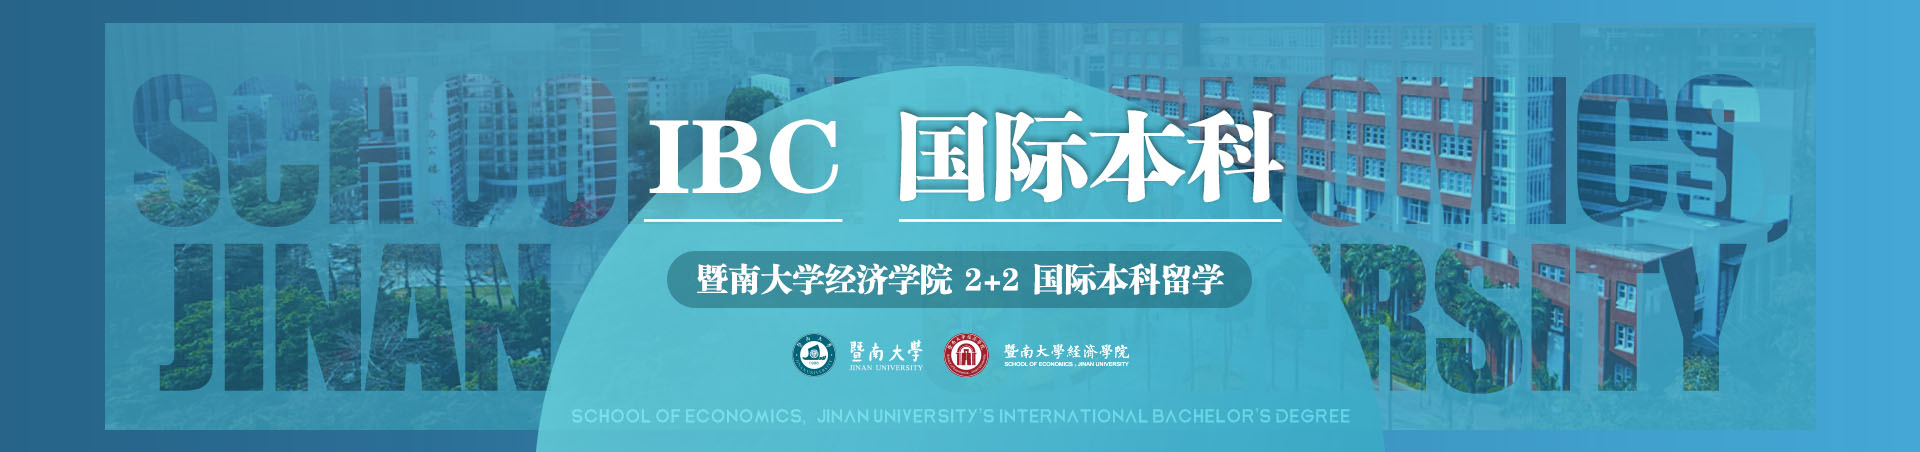 IBC国际本科-暨南大学经济学院2+2国际本科留学